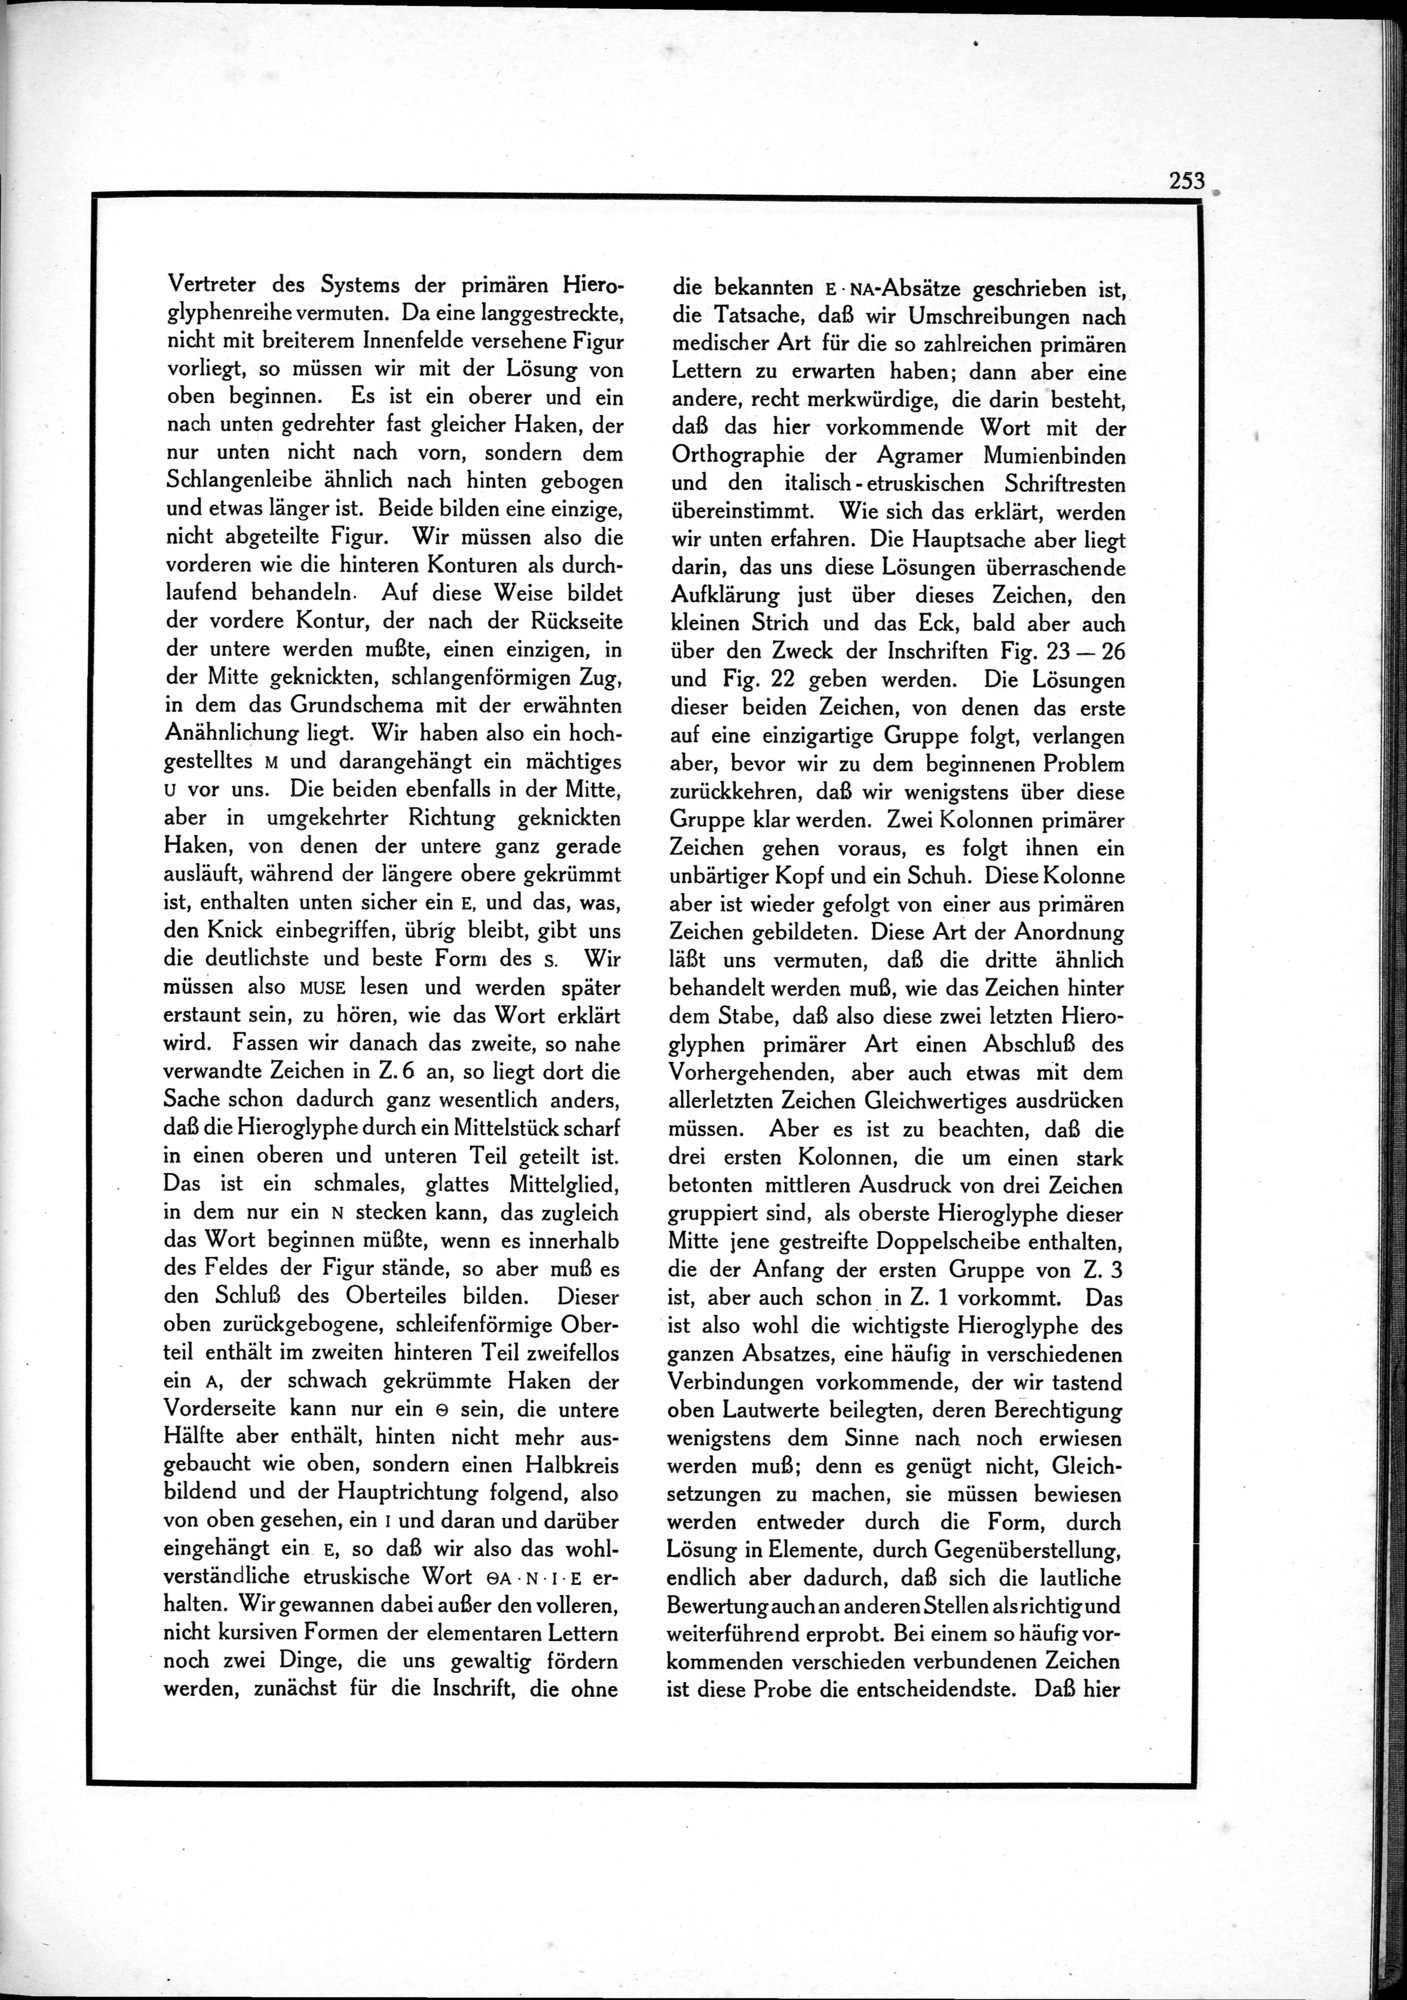 Die Teufel des Avesta und Ihre Beziehungen zur Ikonographie des Buddhismus Zentral-Asiens : vol.1 / Page 257 (Grayscale High Resolution Image)